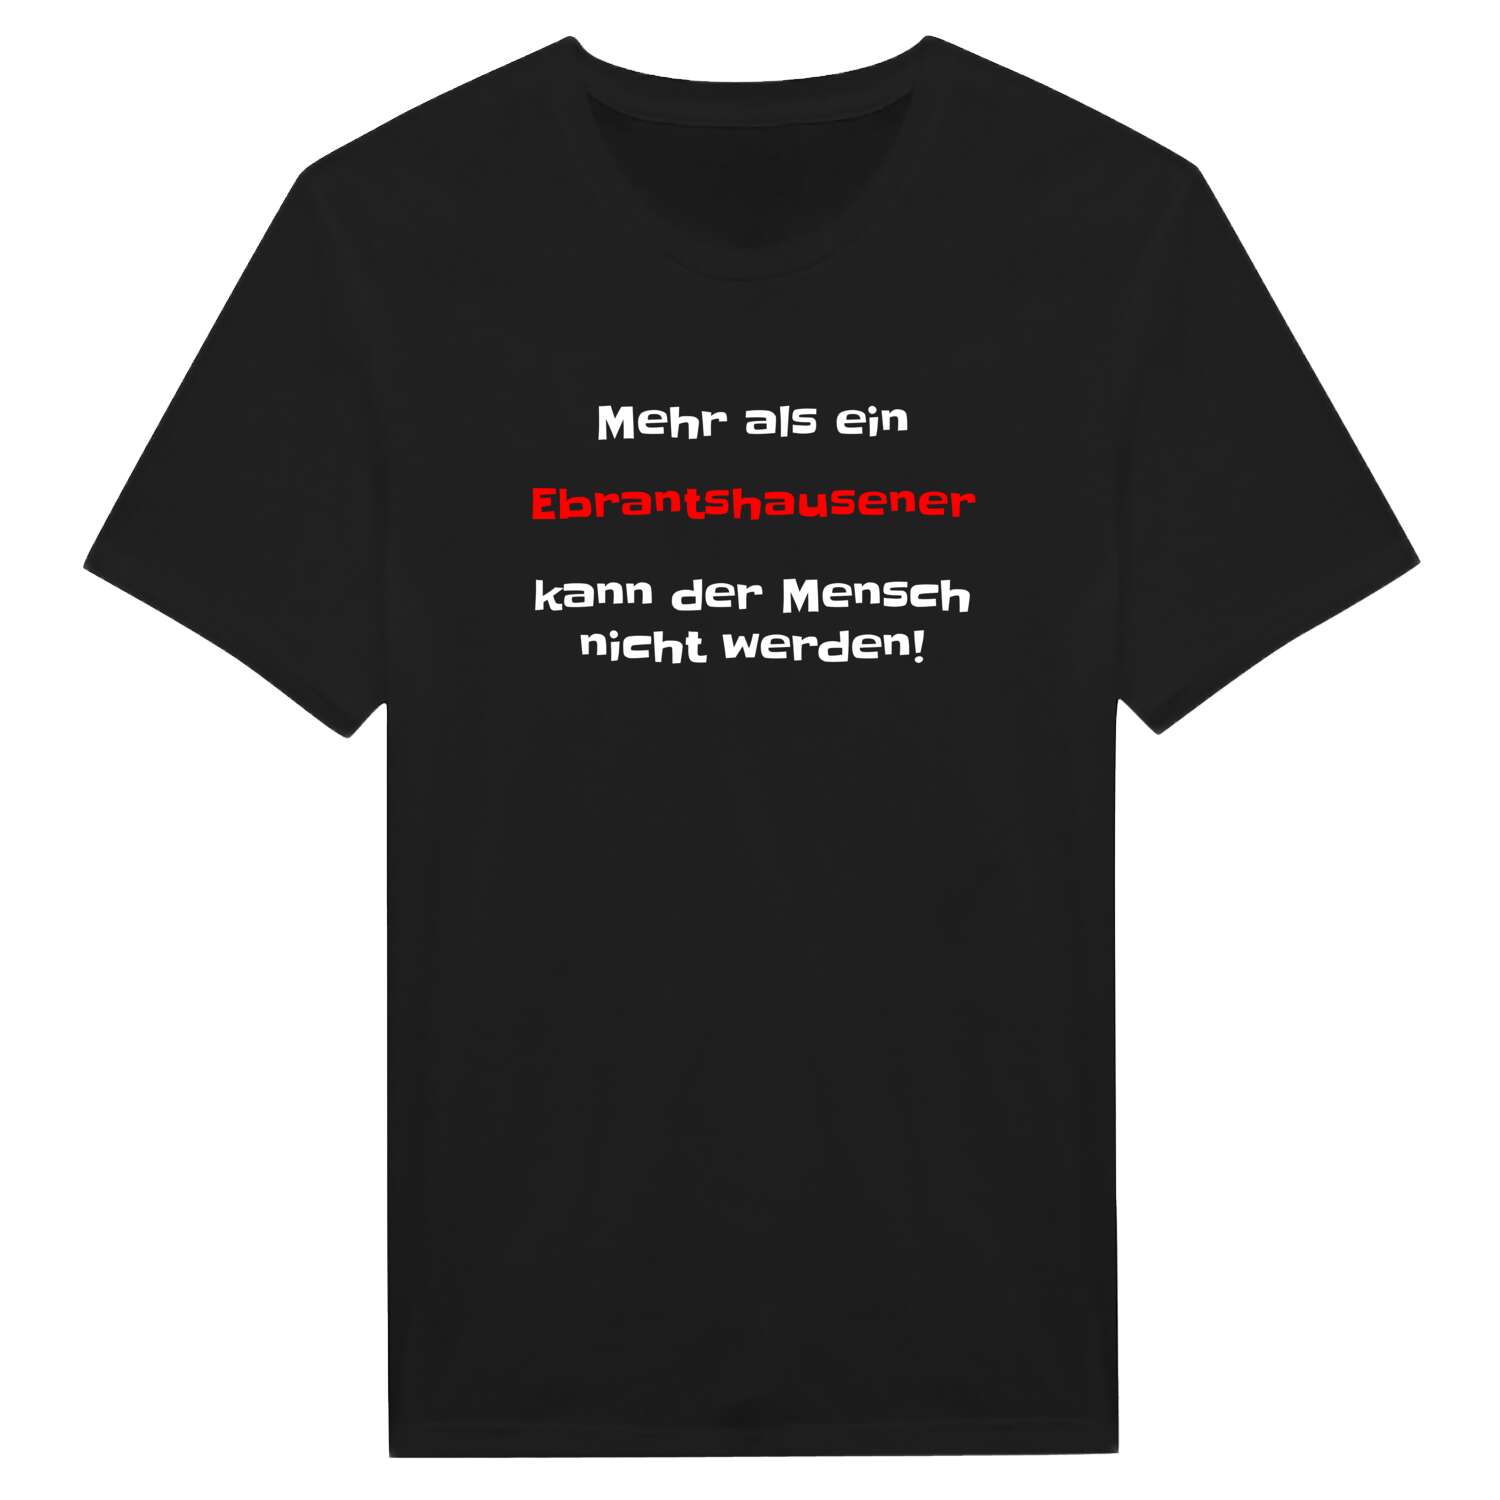 Ebrantshausen T-Shirt »Mehr als ein«